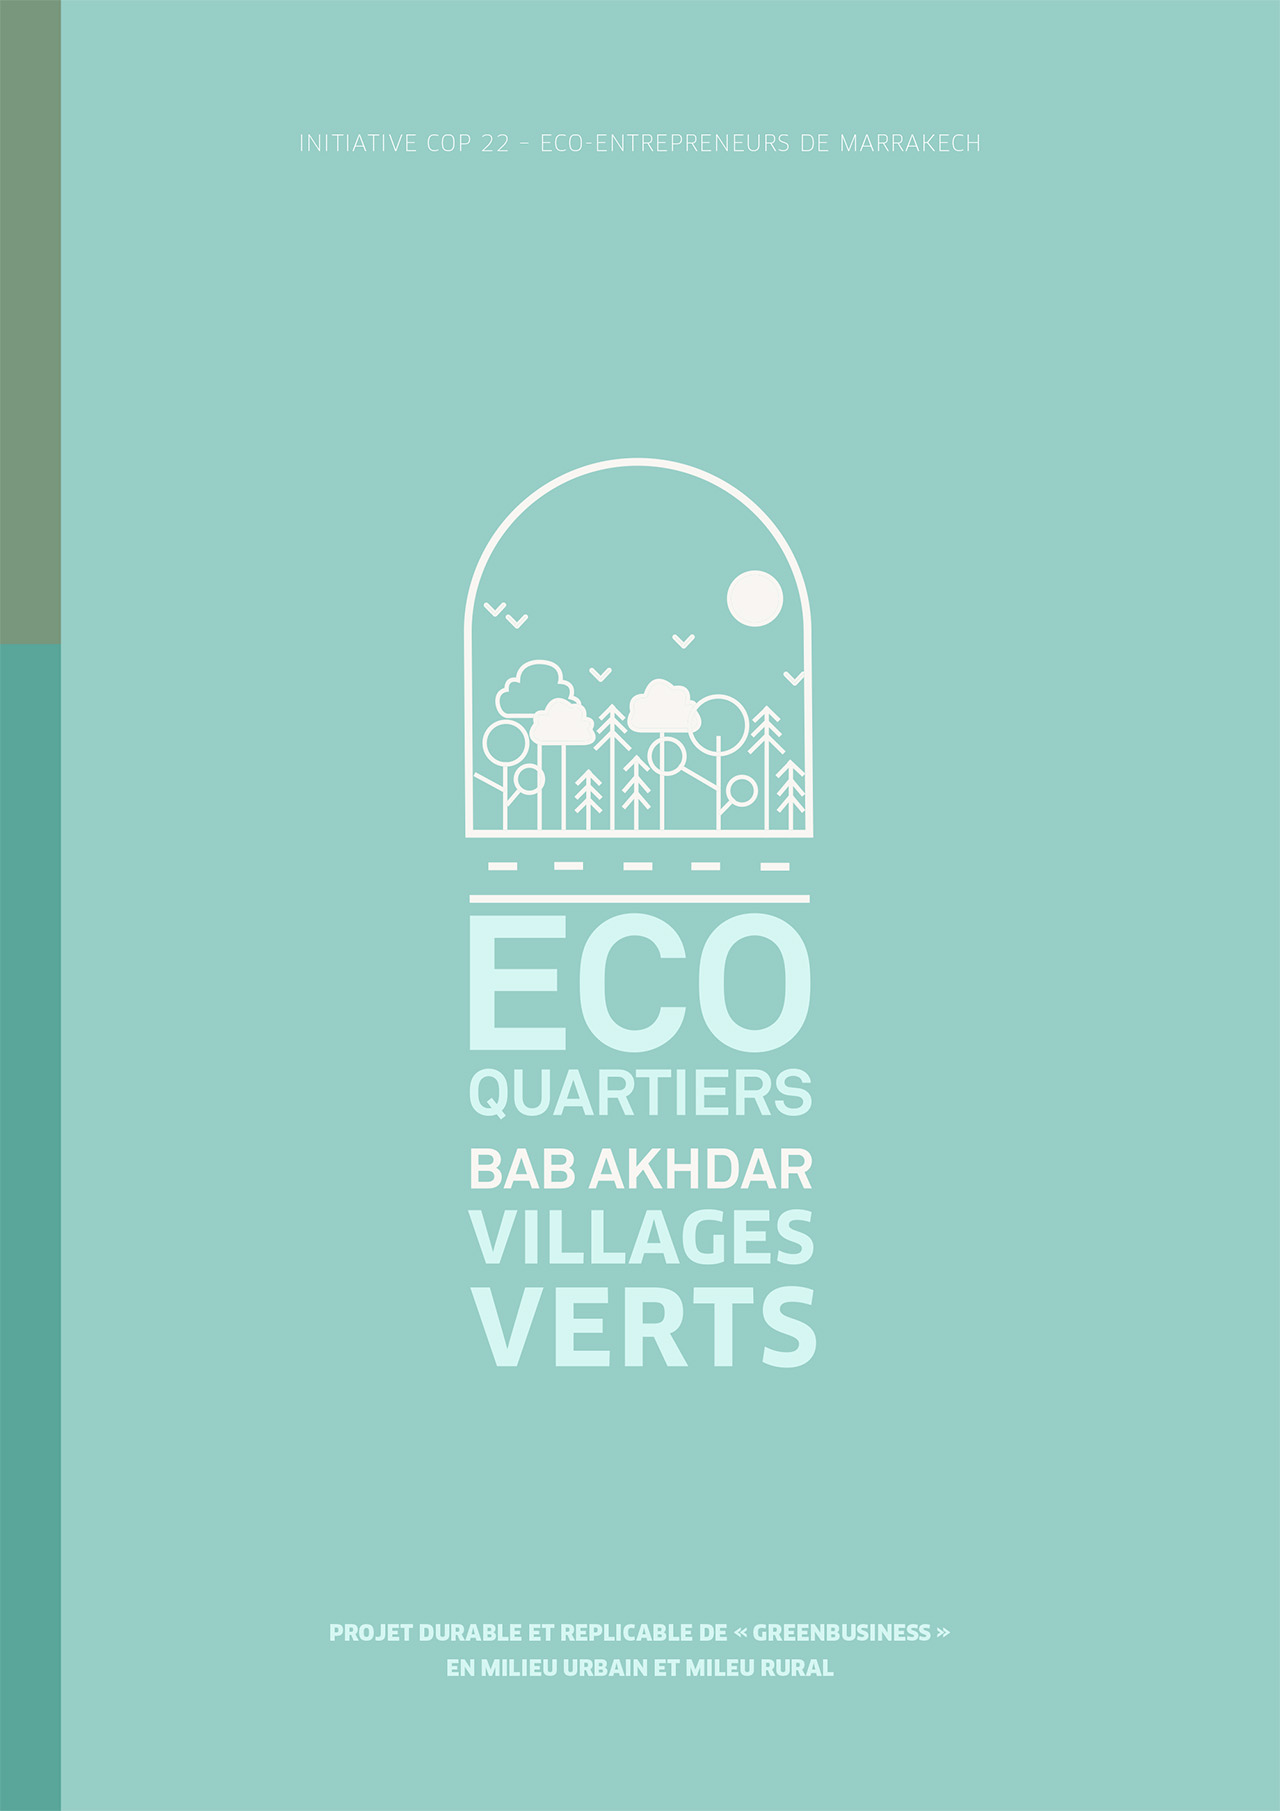 Les villages verts : étude et dynamique de coopération